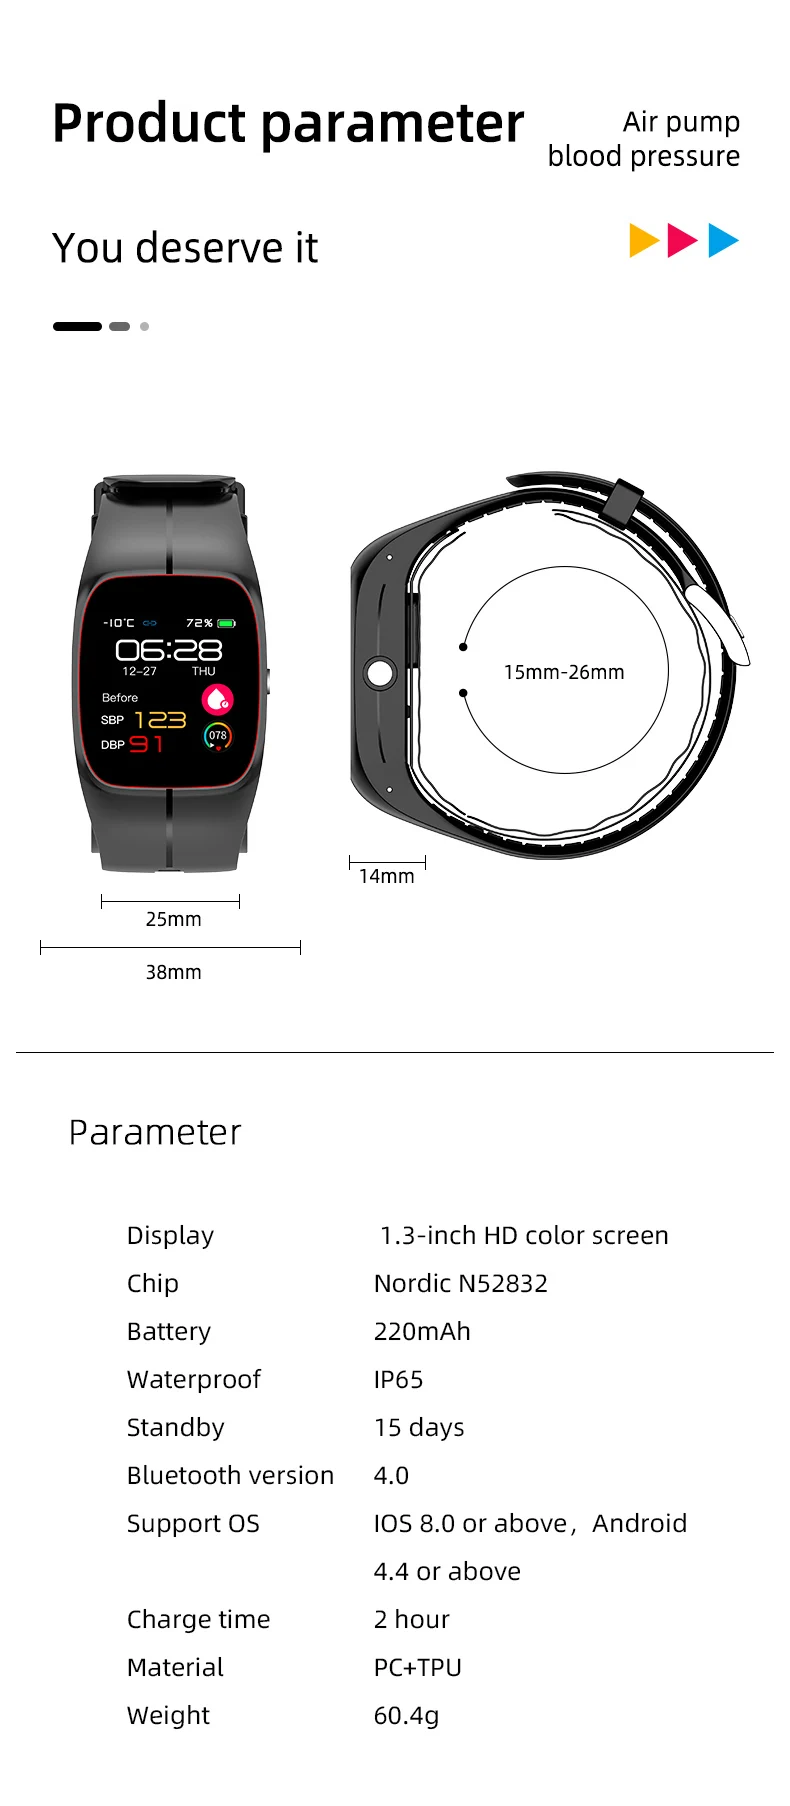 P20 Smart Watch Air Pump Blood Pressure (20).jpg